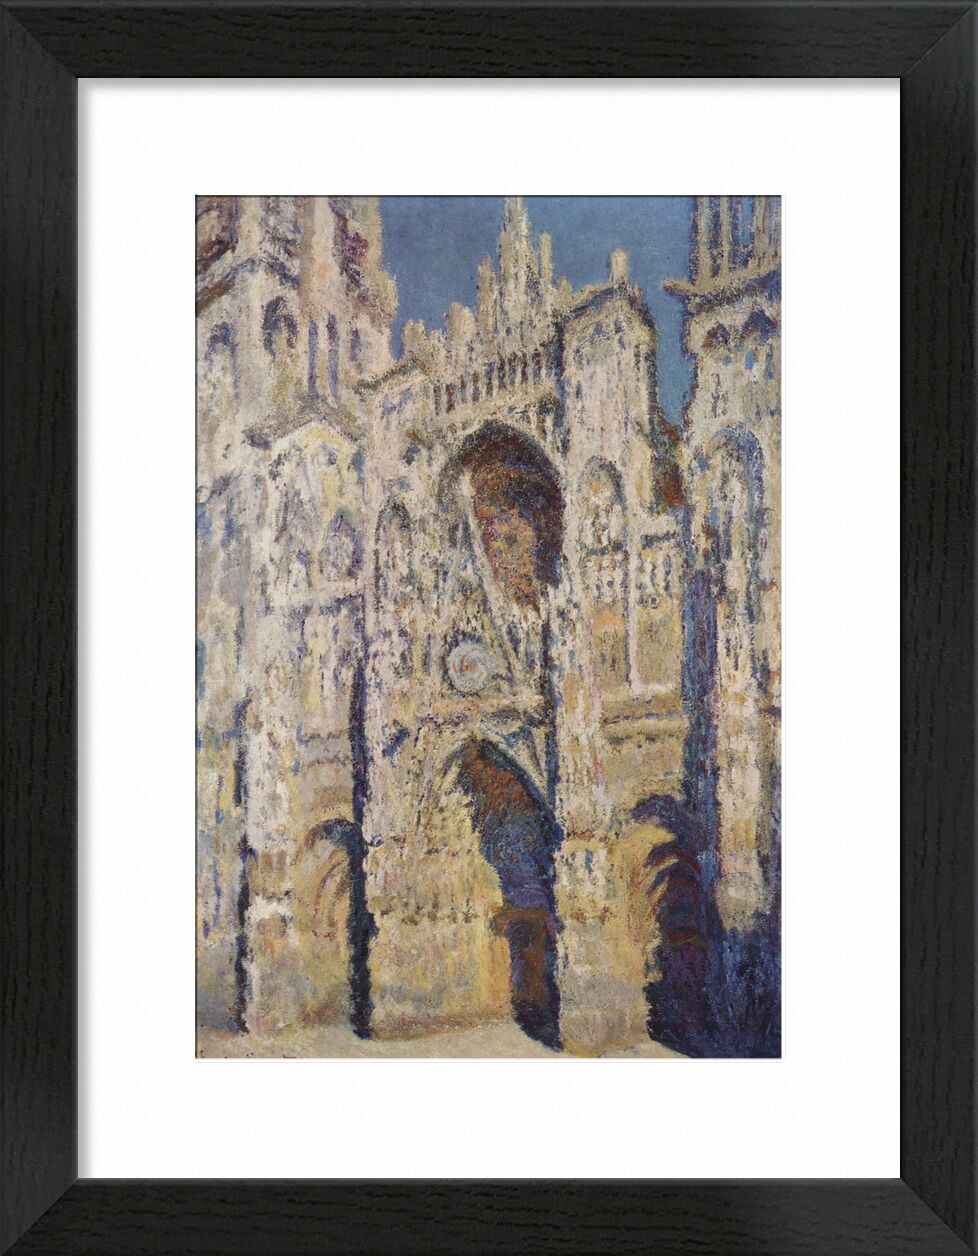 Rouen Cathedral, West Facade, Sunlight - CLAUDE MONET 1894 desde Bellas artes, Prodi Art, lugar de oración, feria, centro de la ciudad, Rouen, CLAUDE MONET, espiritualidad, domingo, pintura, ciudad, iglesia, catedral, Francia